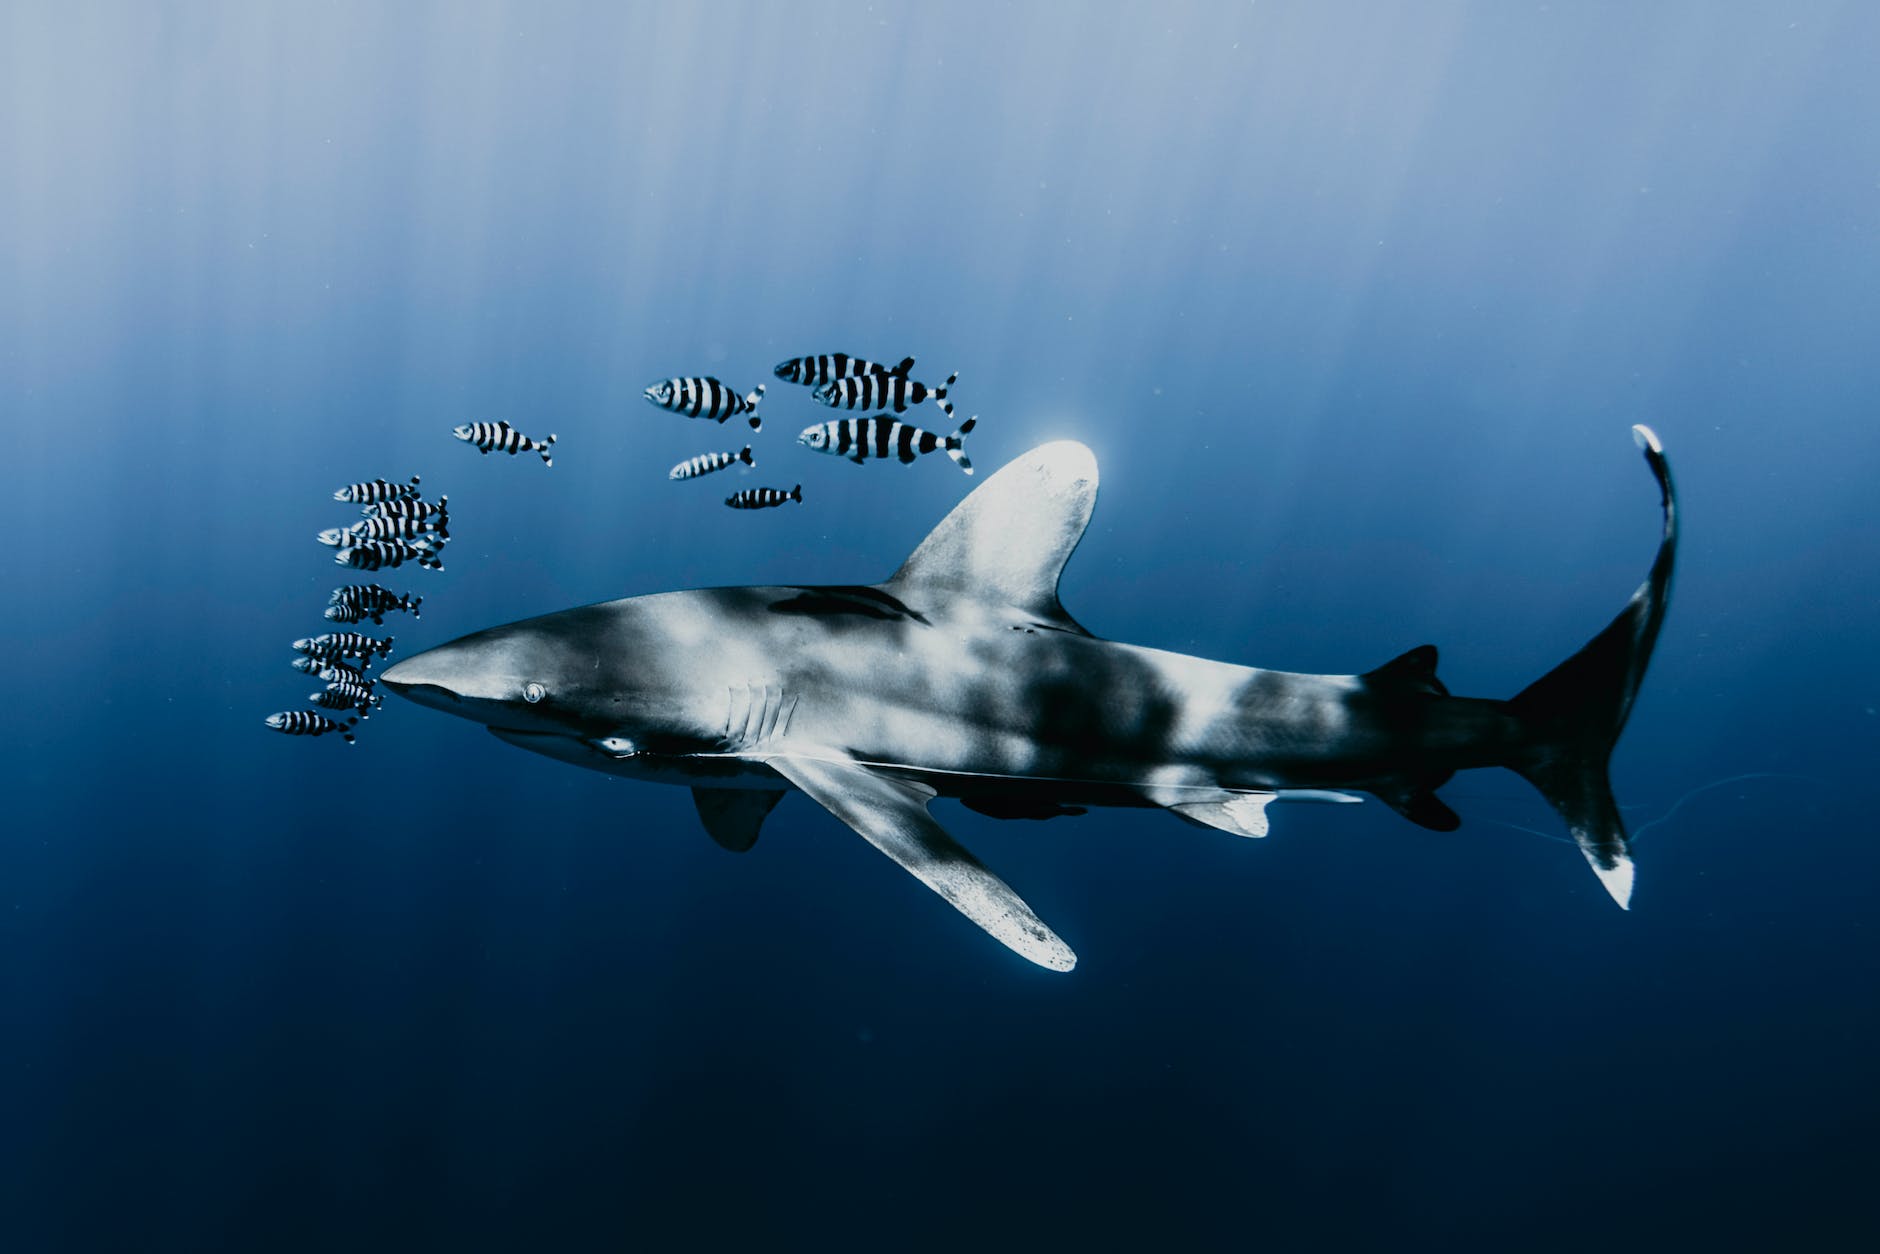 De longimanus is een iconische haai in de Rode Zee - duikers gaan op speciale duiktrips om hem te zien. Hij wordt als relatief nieuwsgierig en agressief beschouwd.